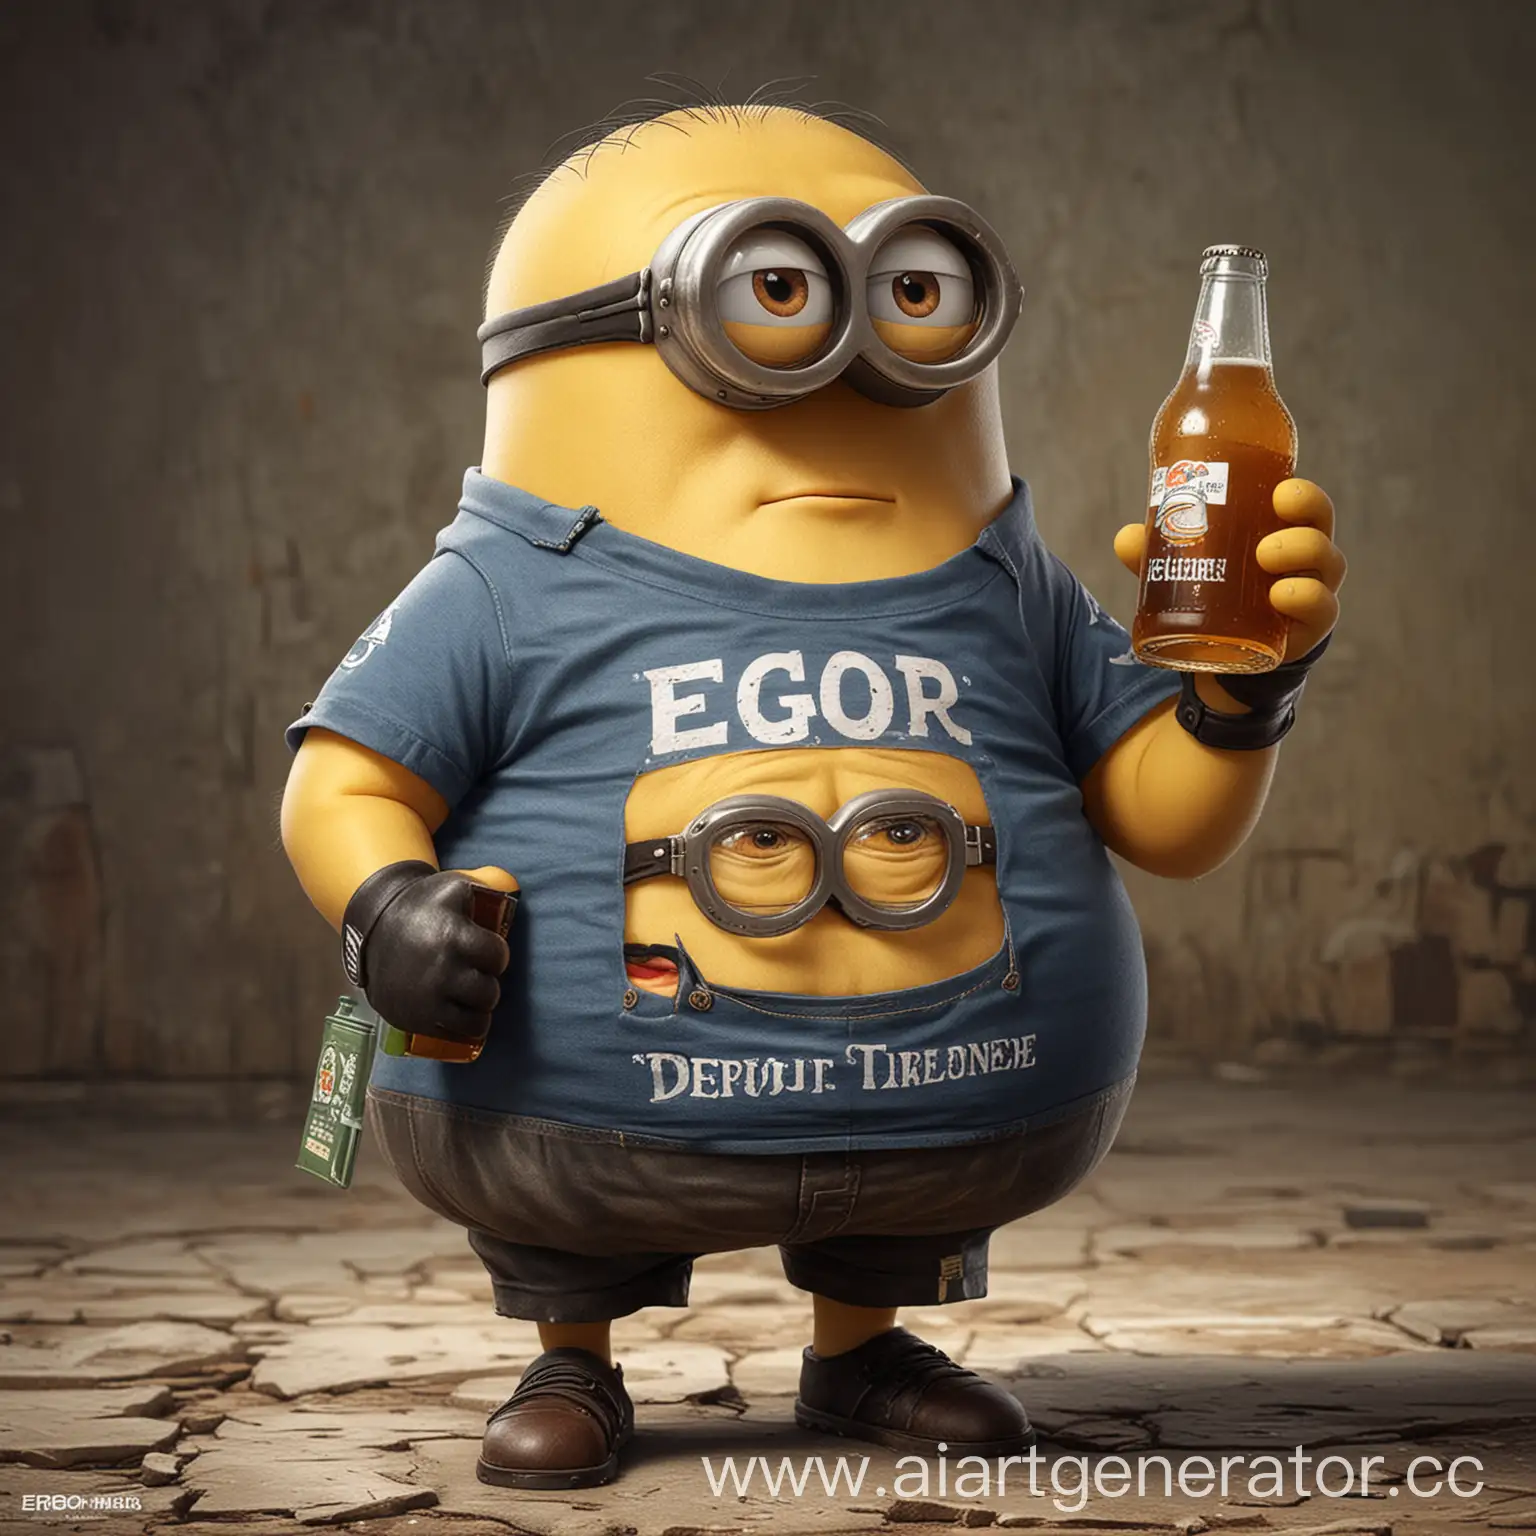 Очень жирный миньон стоит пьëт пиво и одет в футболку с надписью Egor